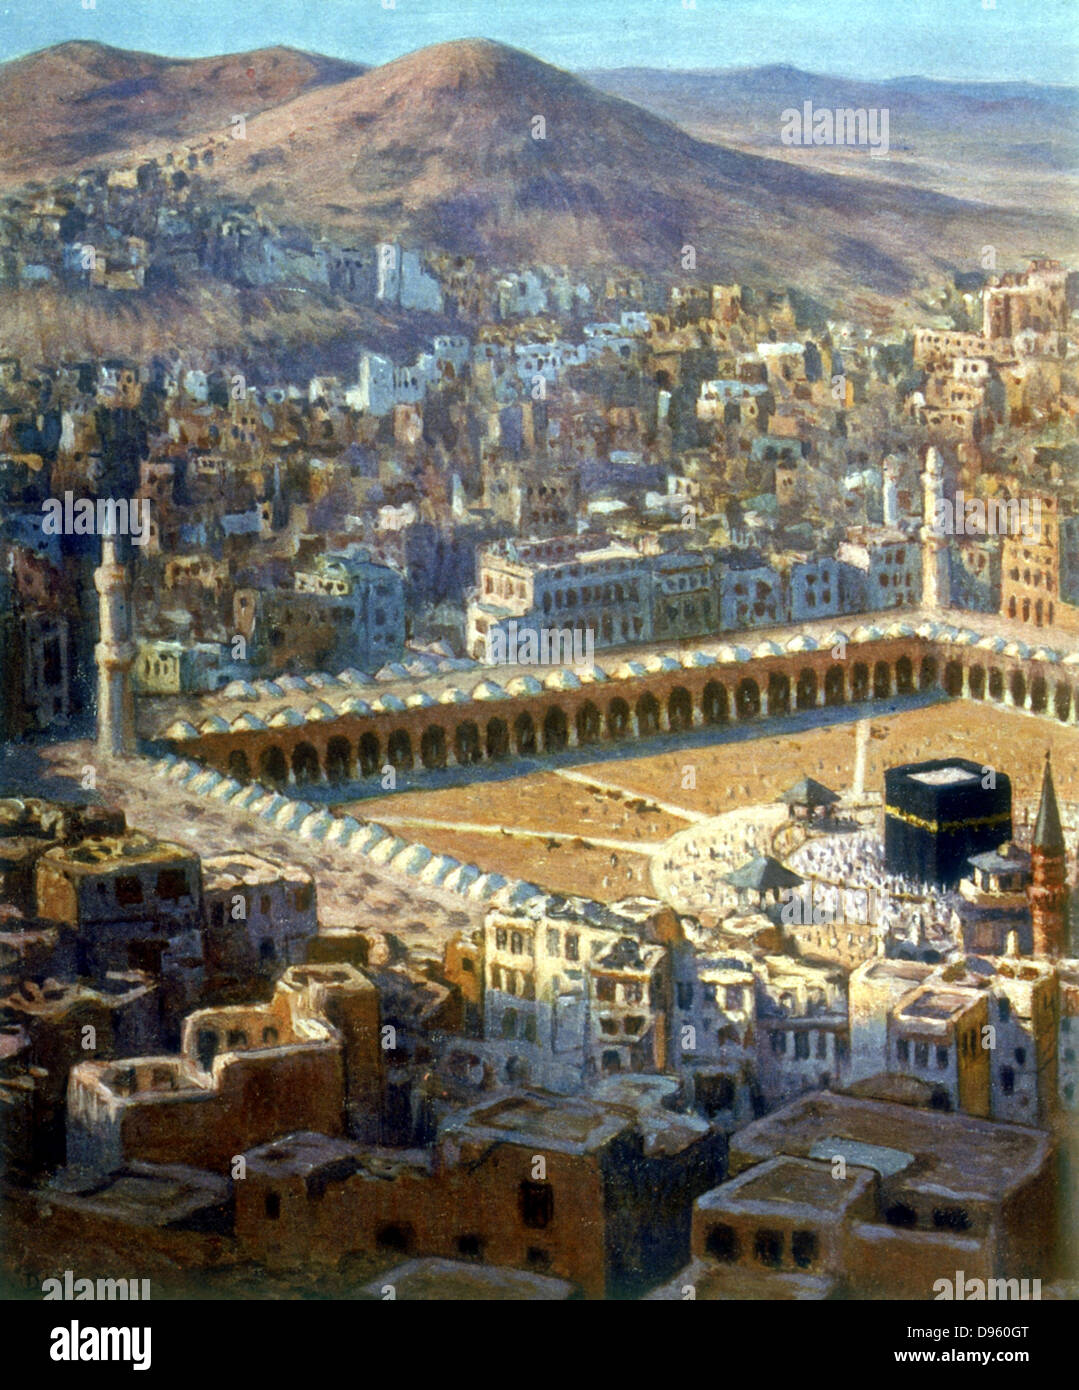 Vue de La Mecque. Illustration de 'La Vie de Mohammed,  : d'Allah' (La Vie de Mohammed, prophète d'Allah). Banque D'Images